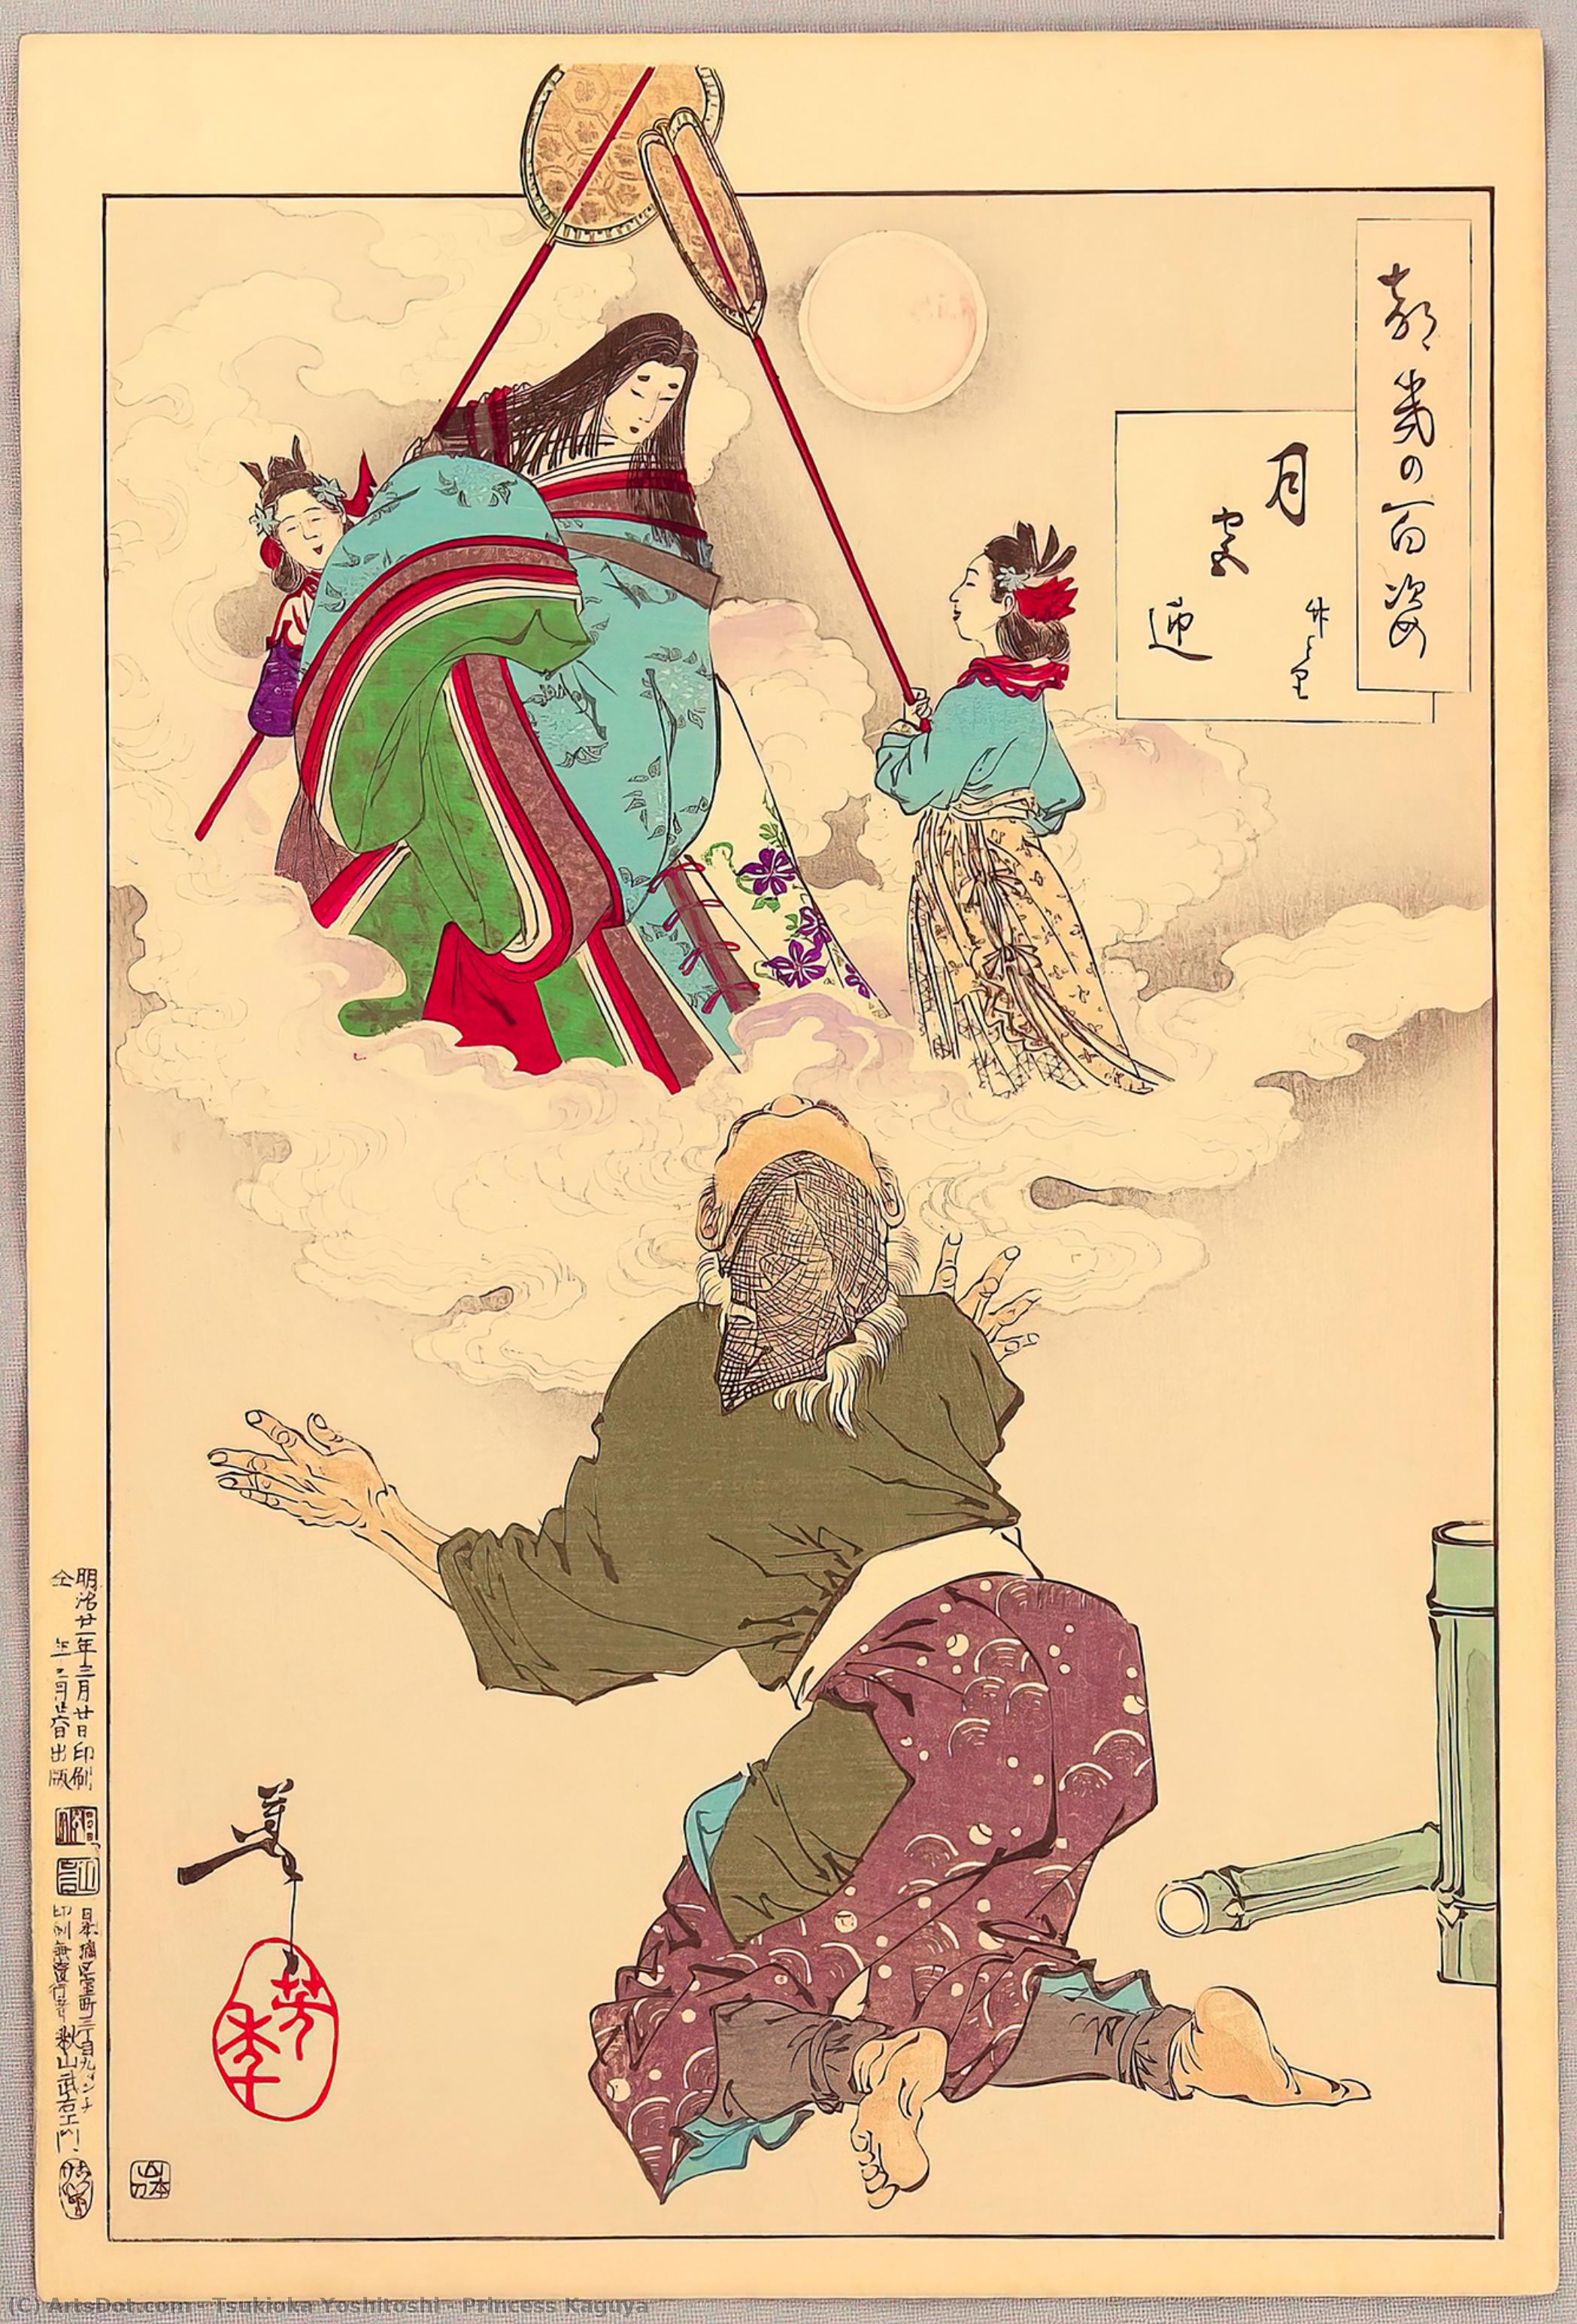 WikiOO.org - Encyclopedia of Fine Arts - Schilderen, Artwork Tsukioka Yoshitoshi - Princess Kaguya